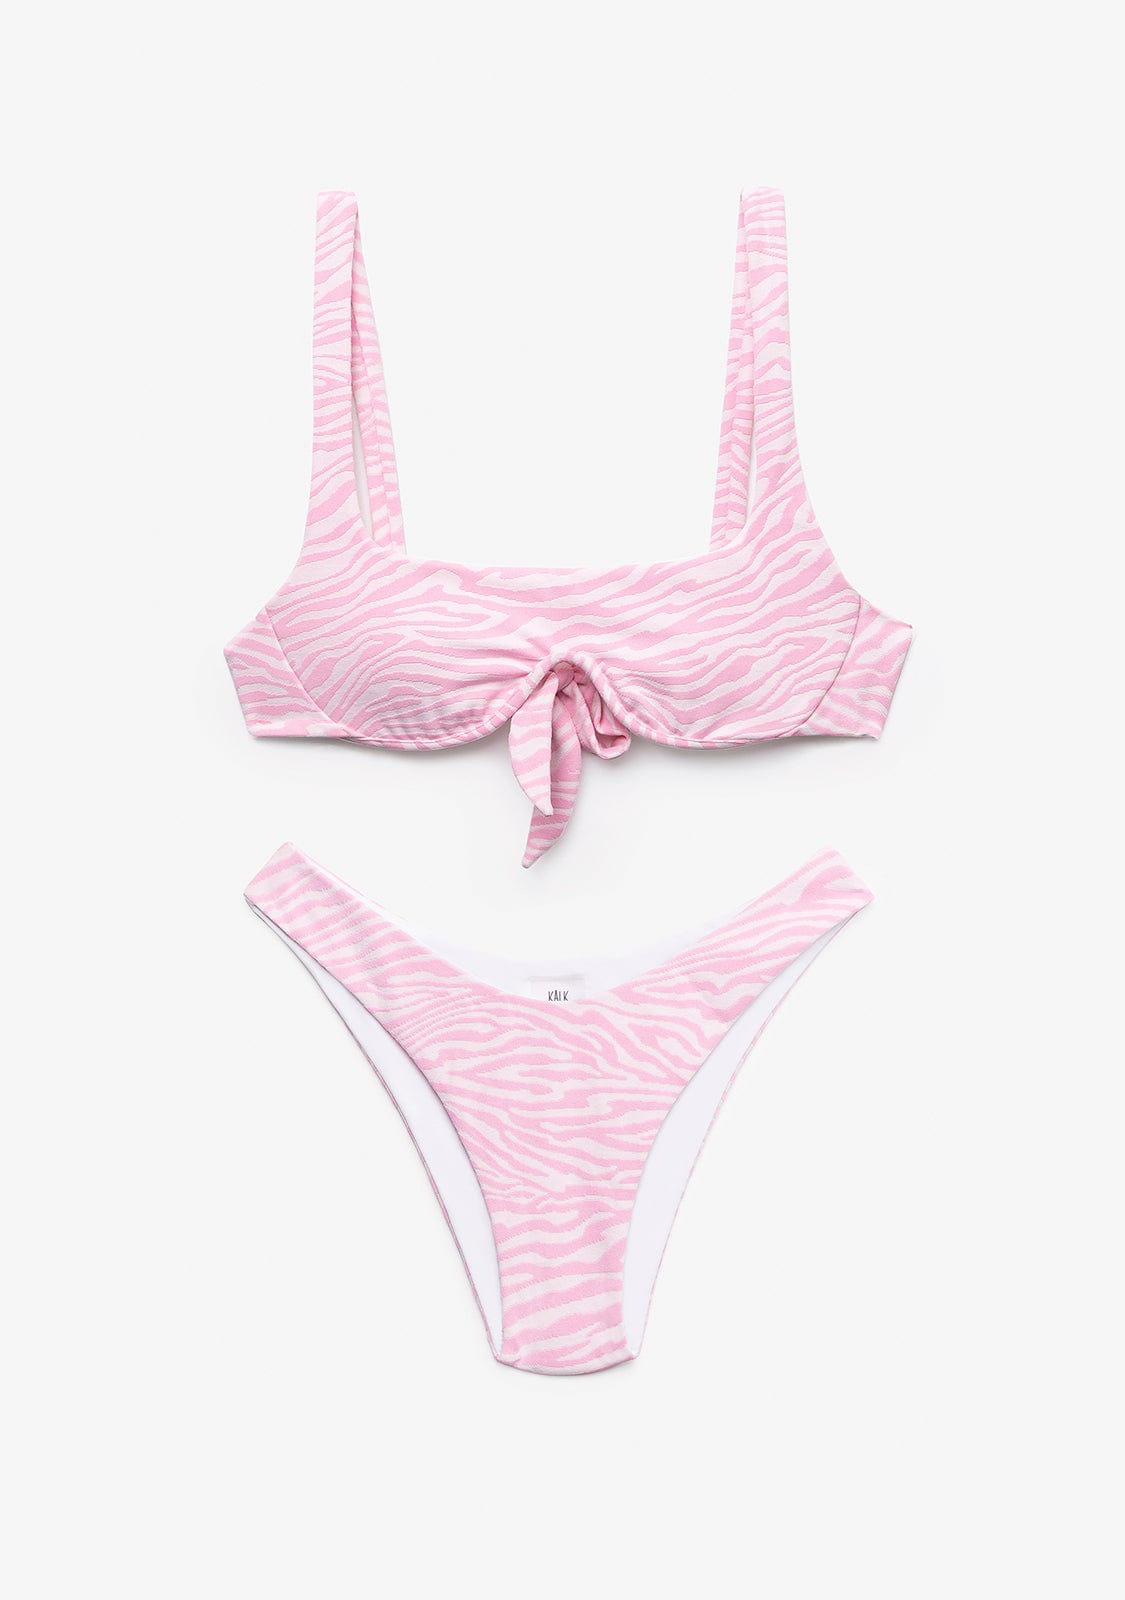 Bikini Top Ume + Braguita Seina Cebra Rosa